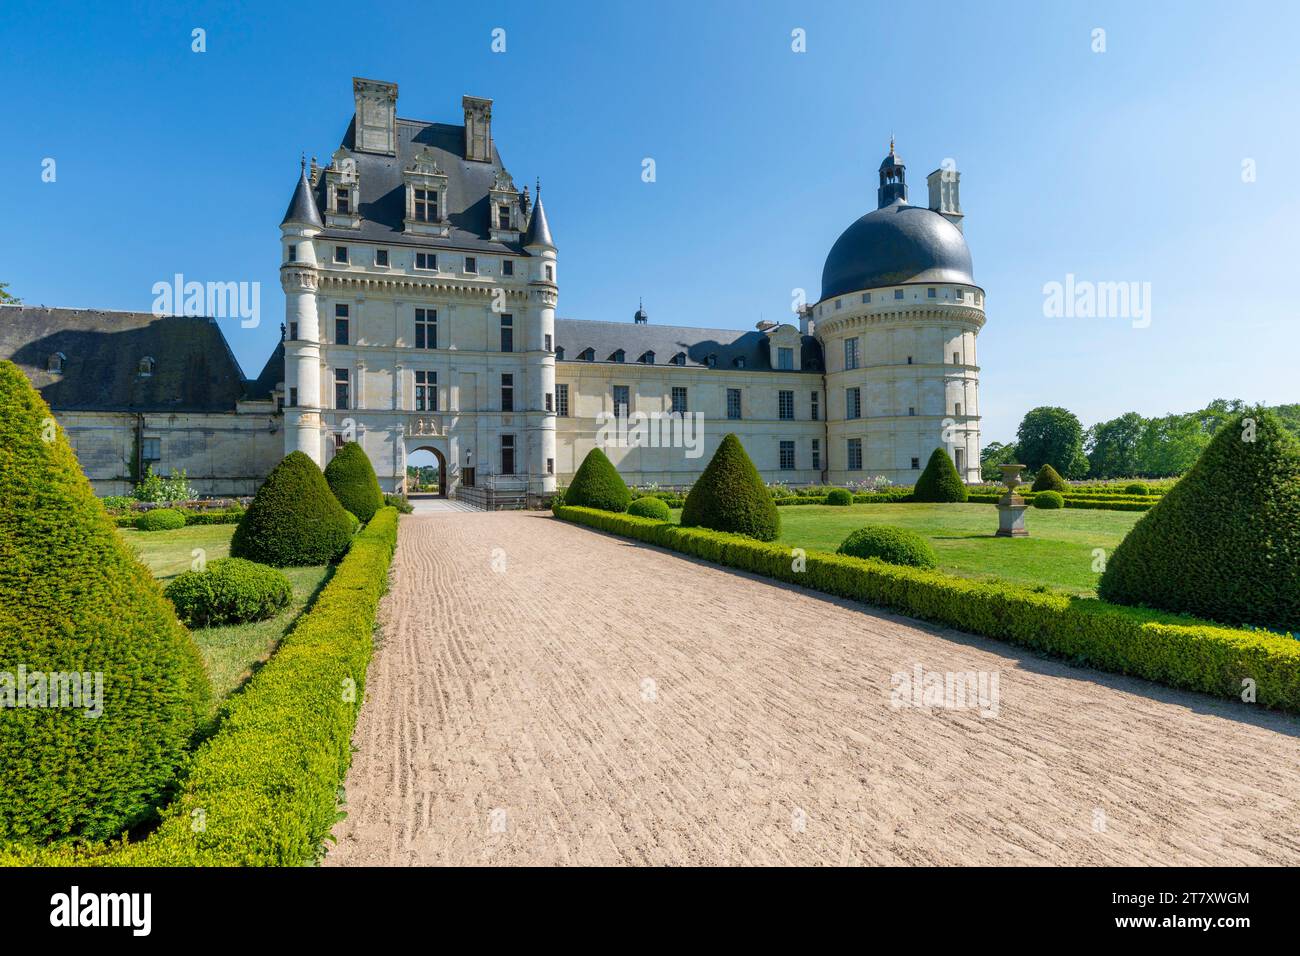 Chateau de Valencay, Valencay, Indre, Centre-Val de Loire, France, Europe Stock Photo